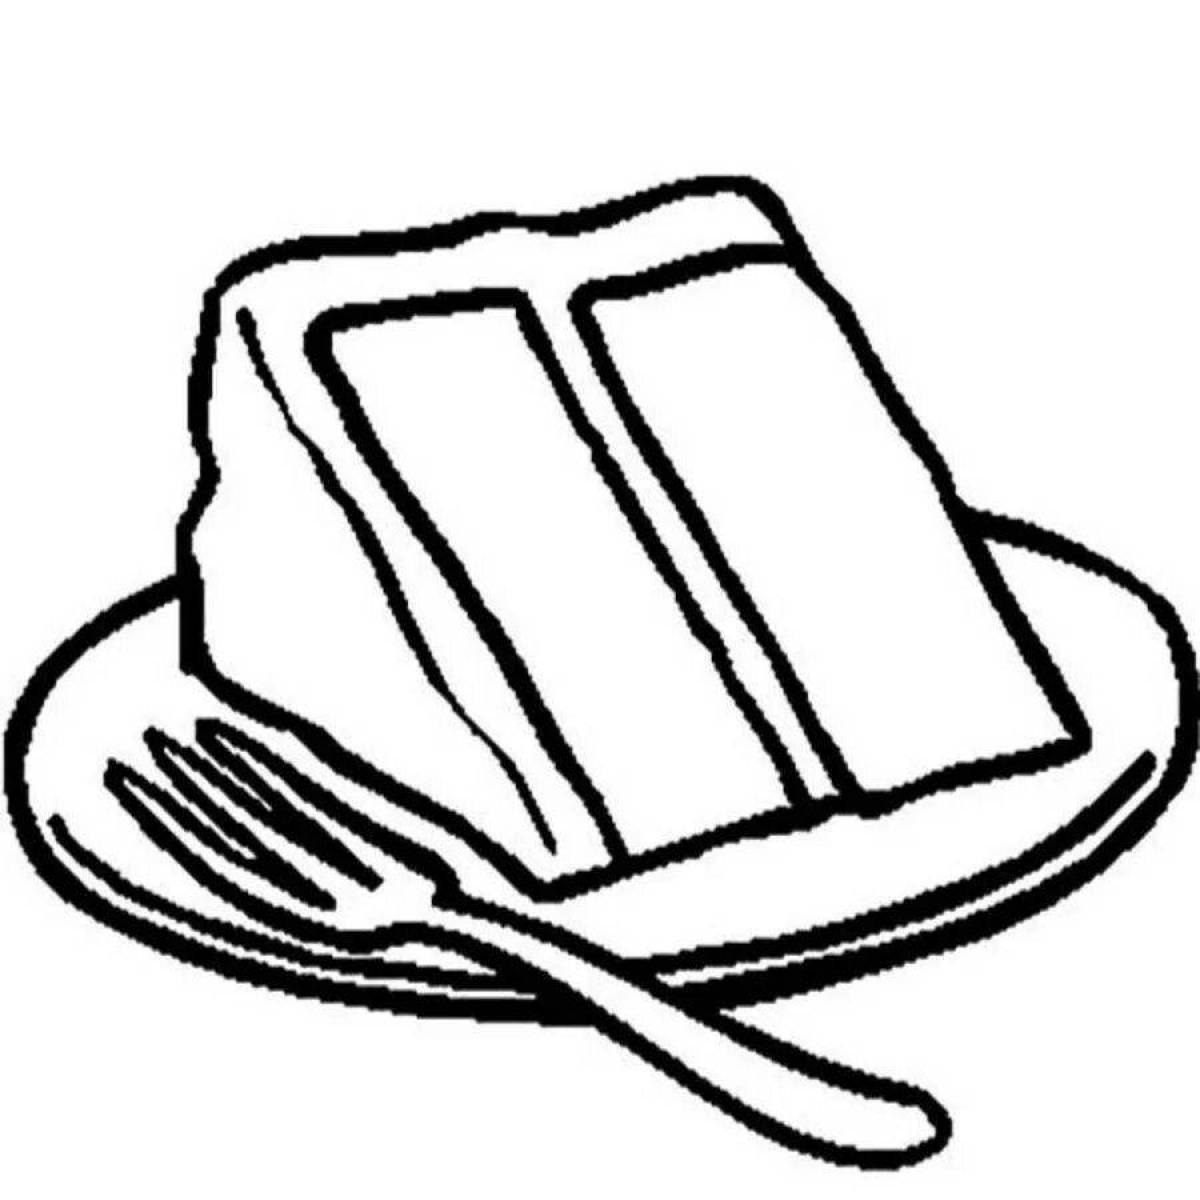 Кусок торта на тарелке рисунок